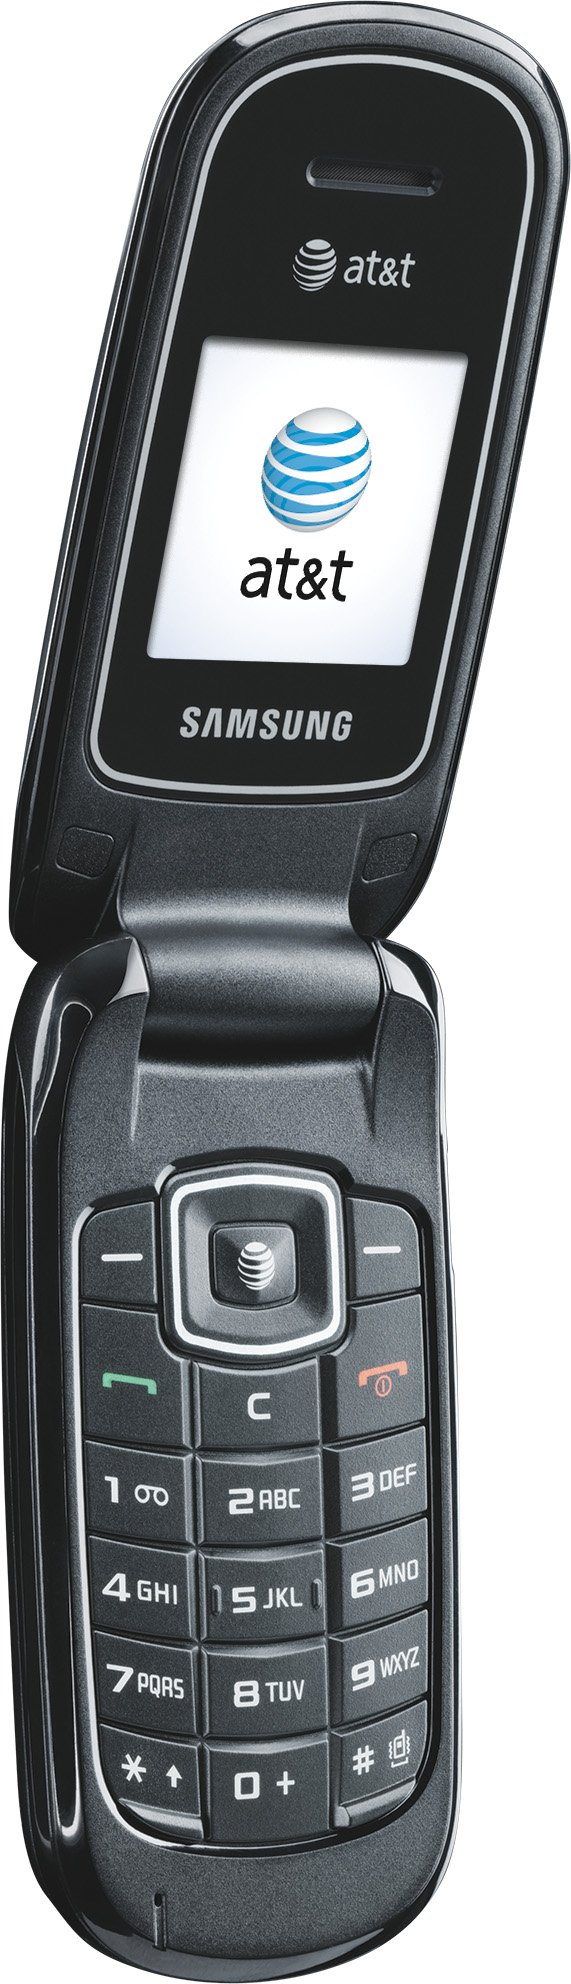 Samsung a107 Prepaid GoPhone (AT&T)